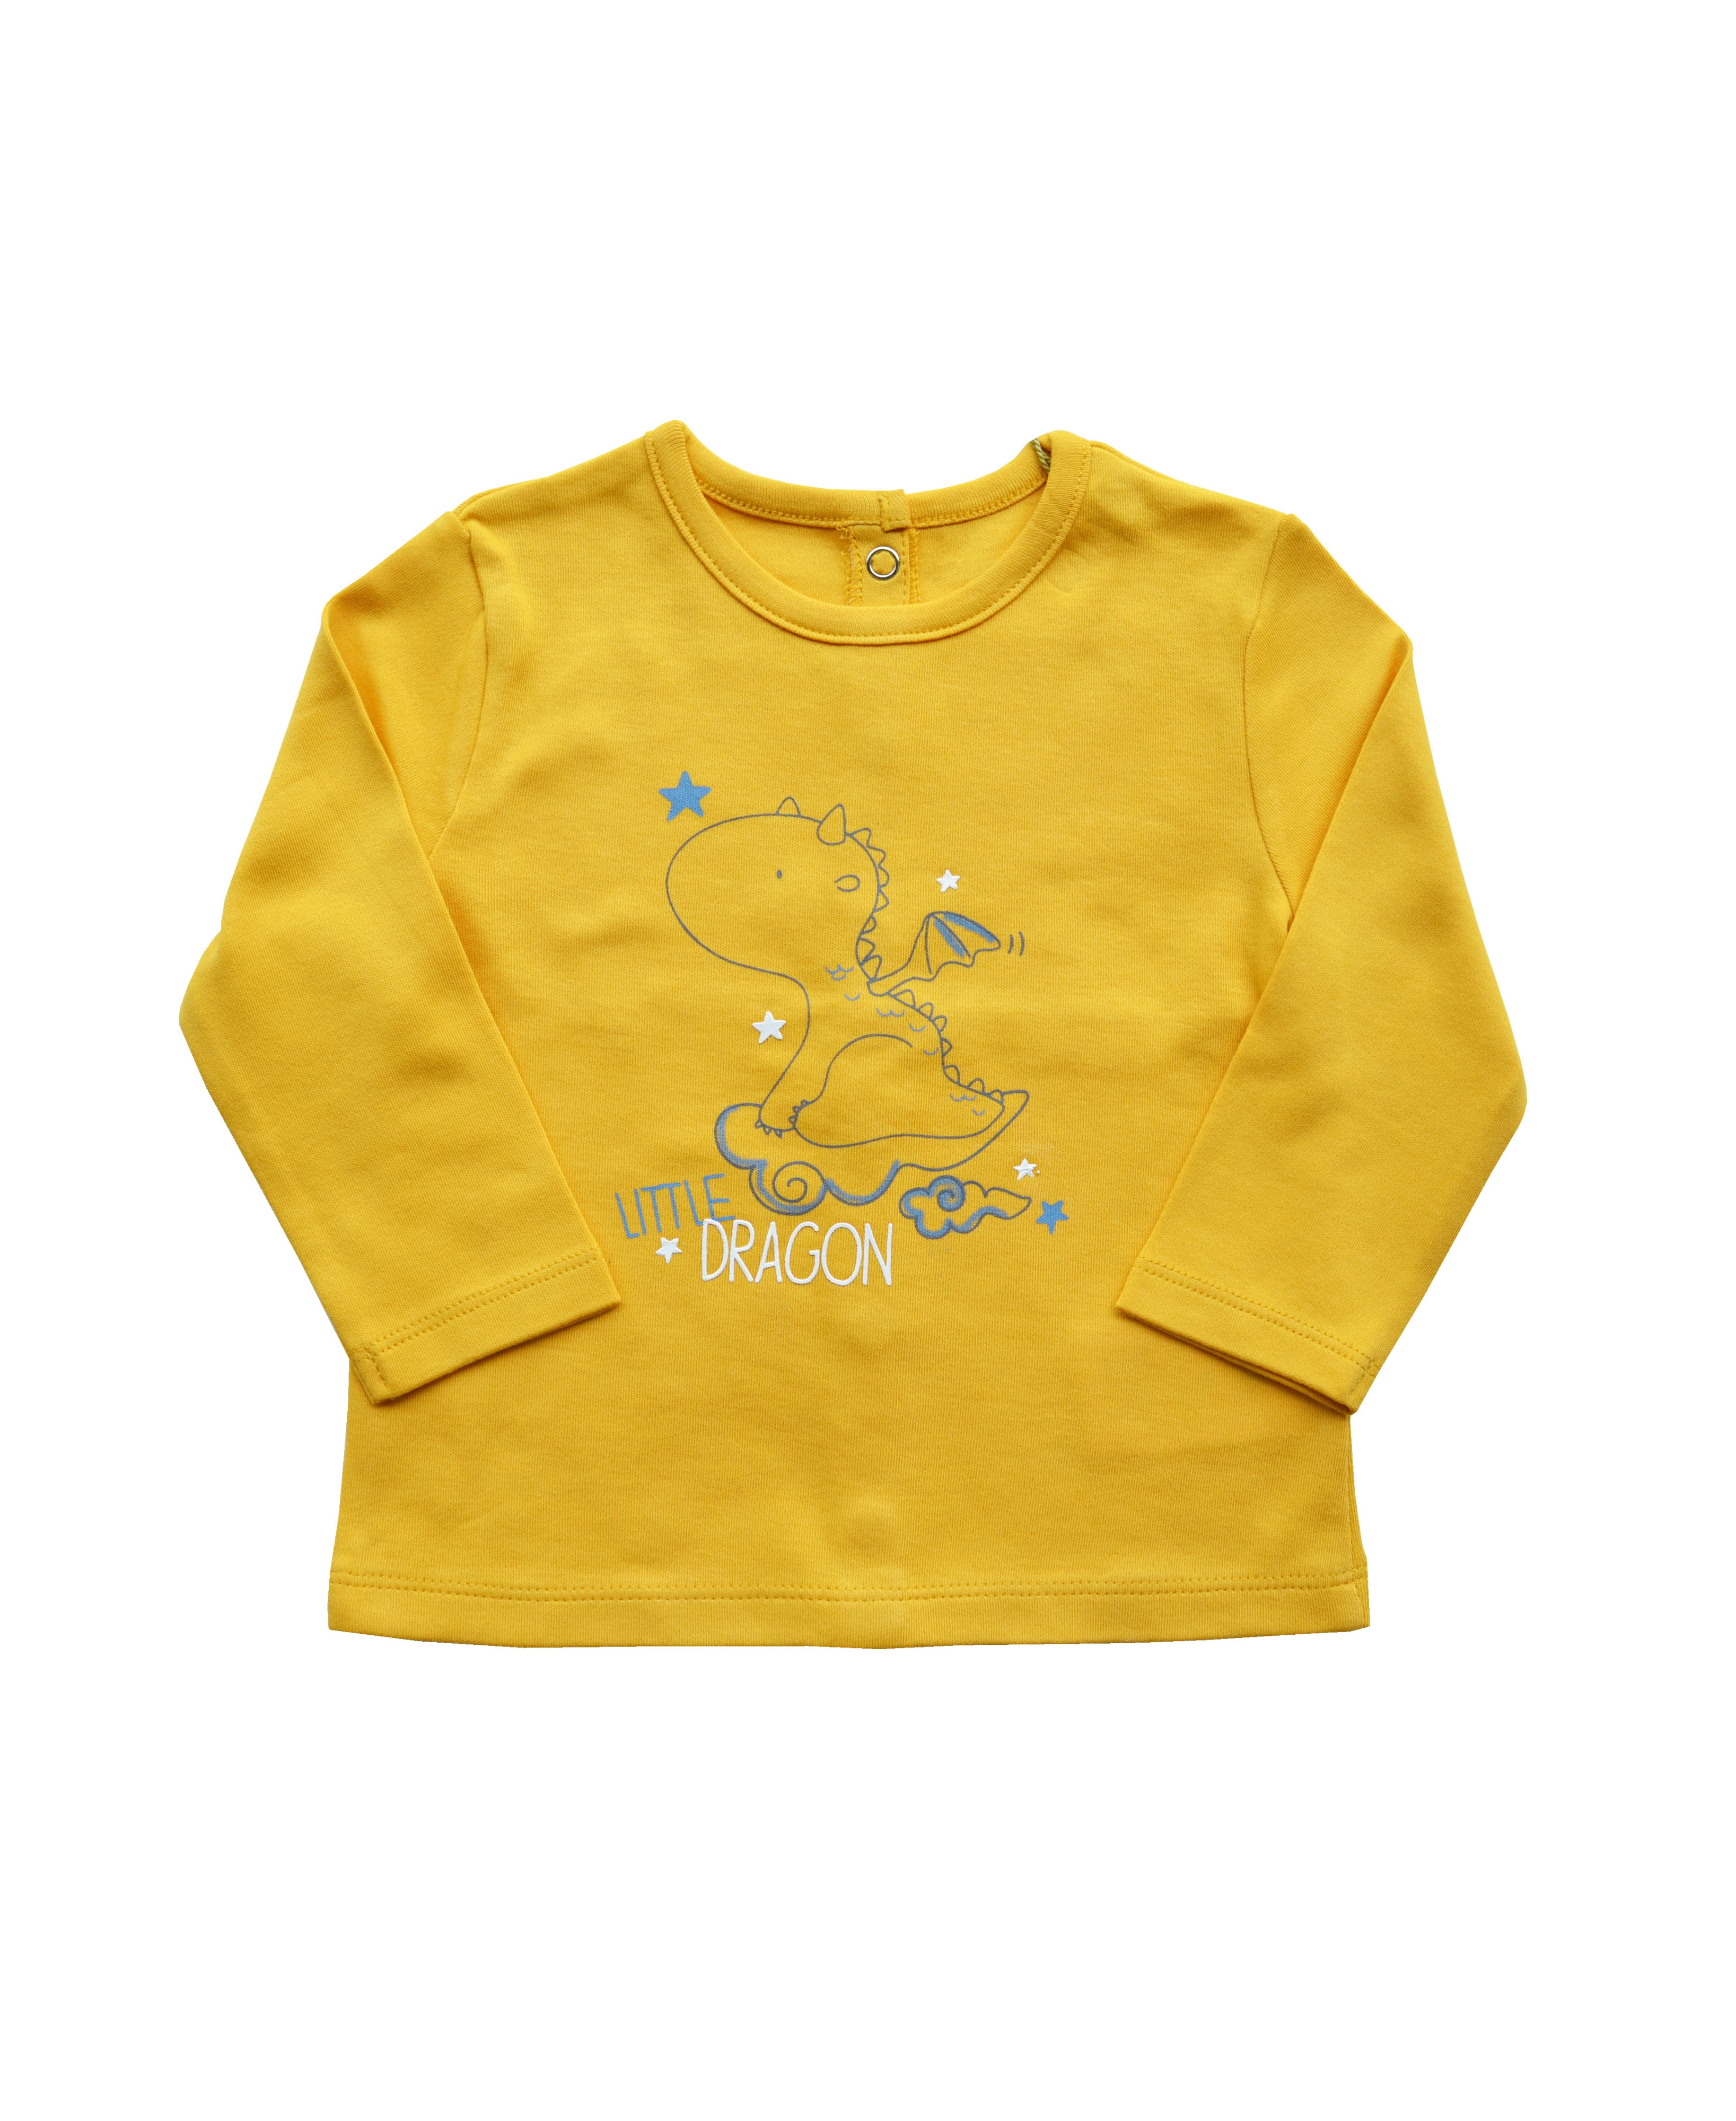 Babeez | Yellow T-Shirt with Little Dragon Print at chest (100% Cotton Interlock Biowash) undefined